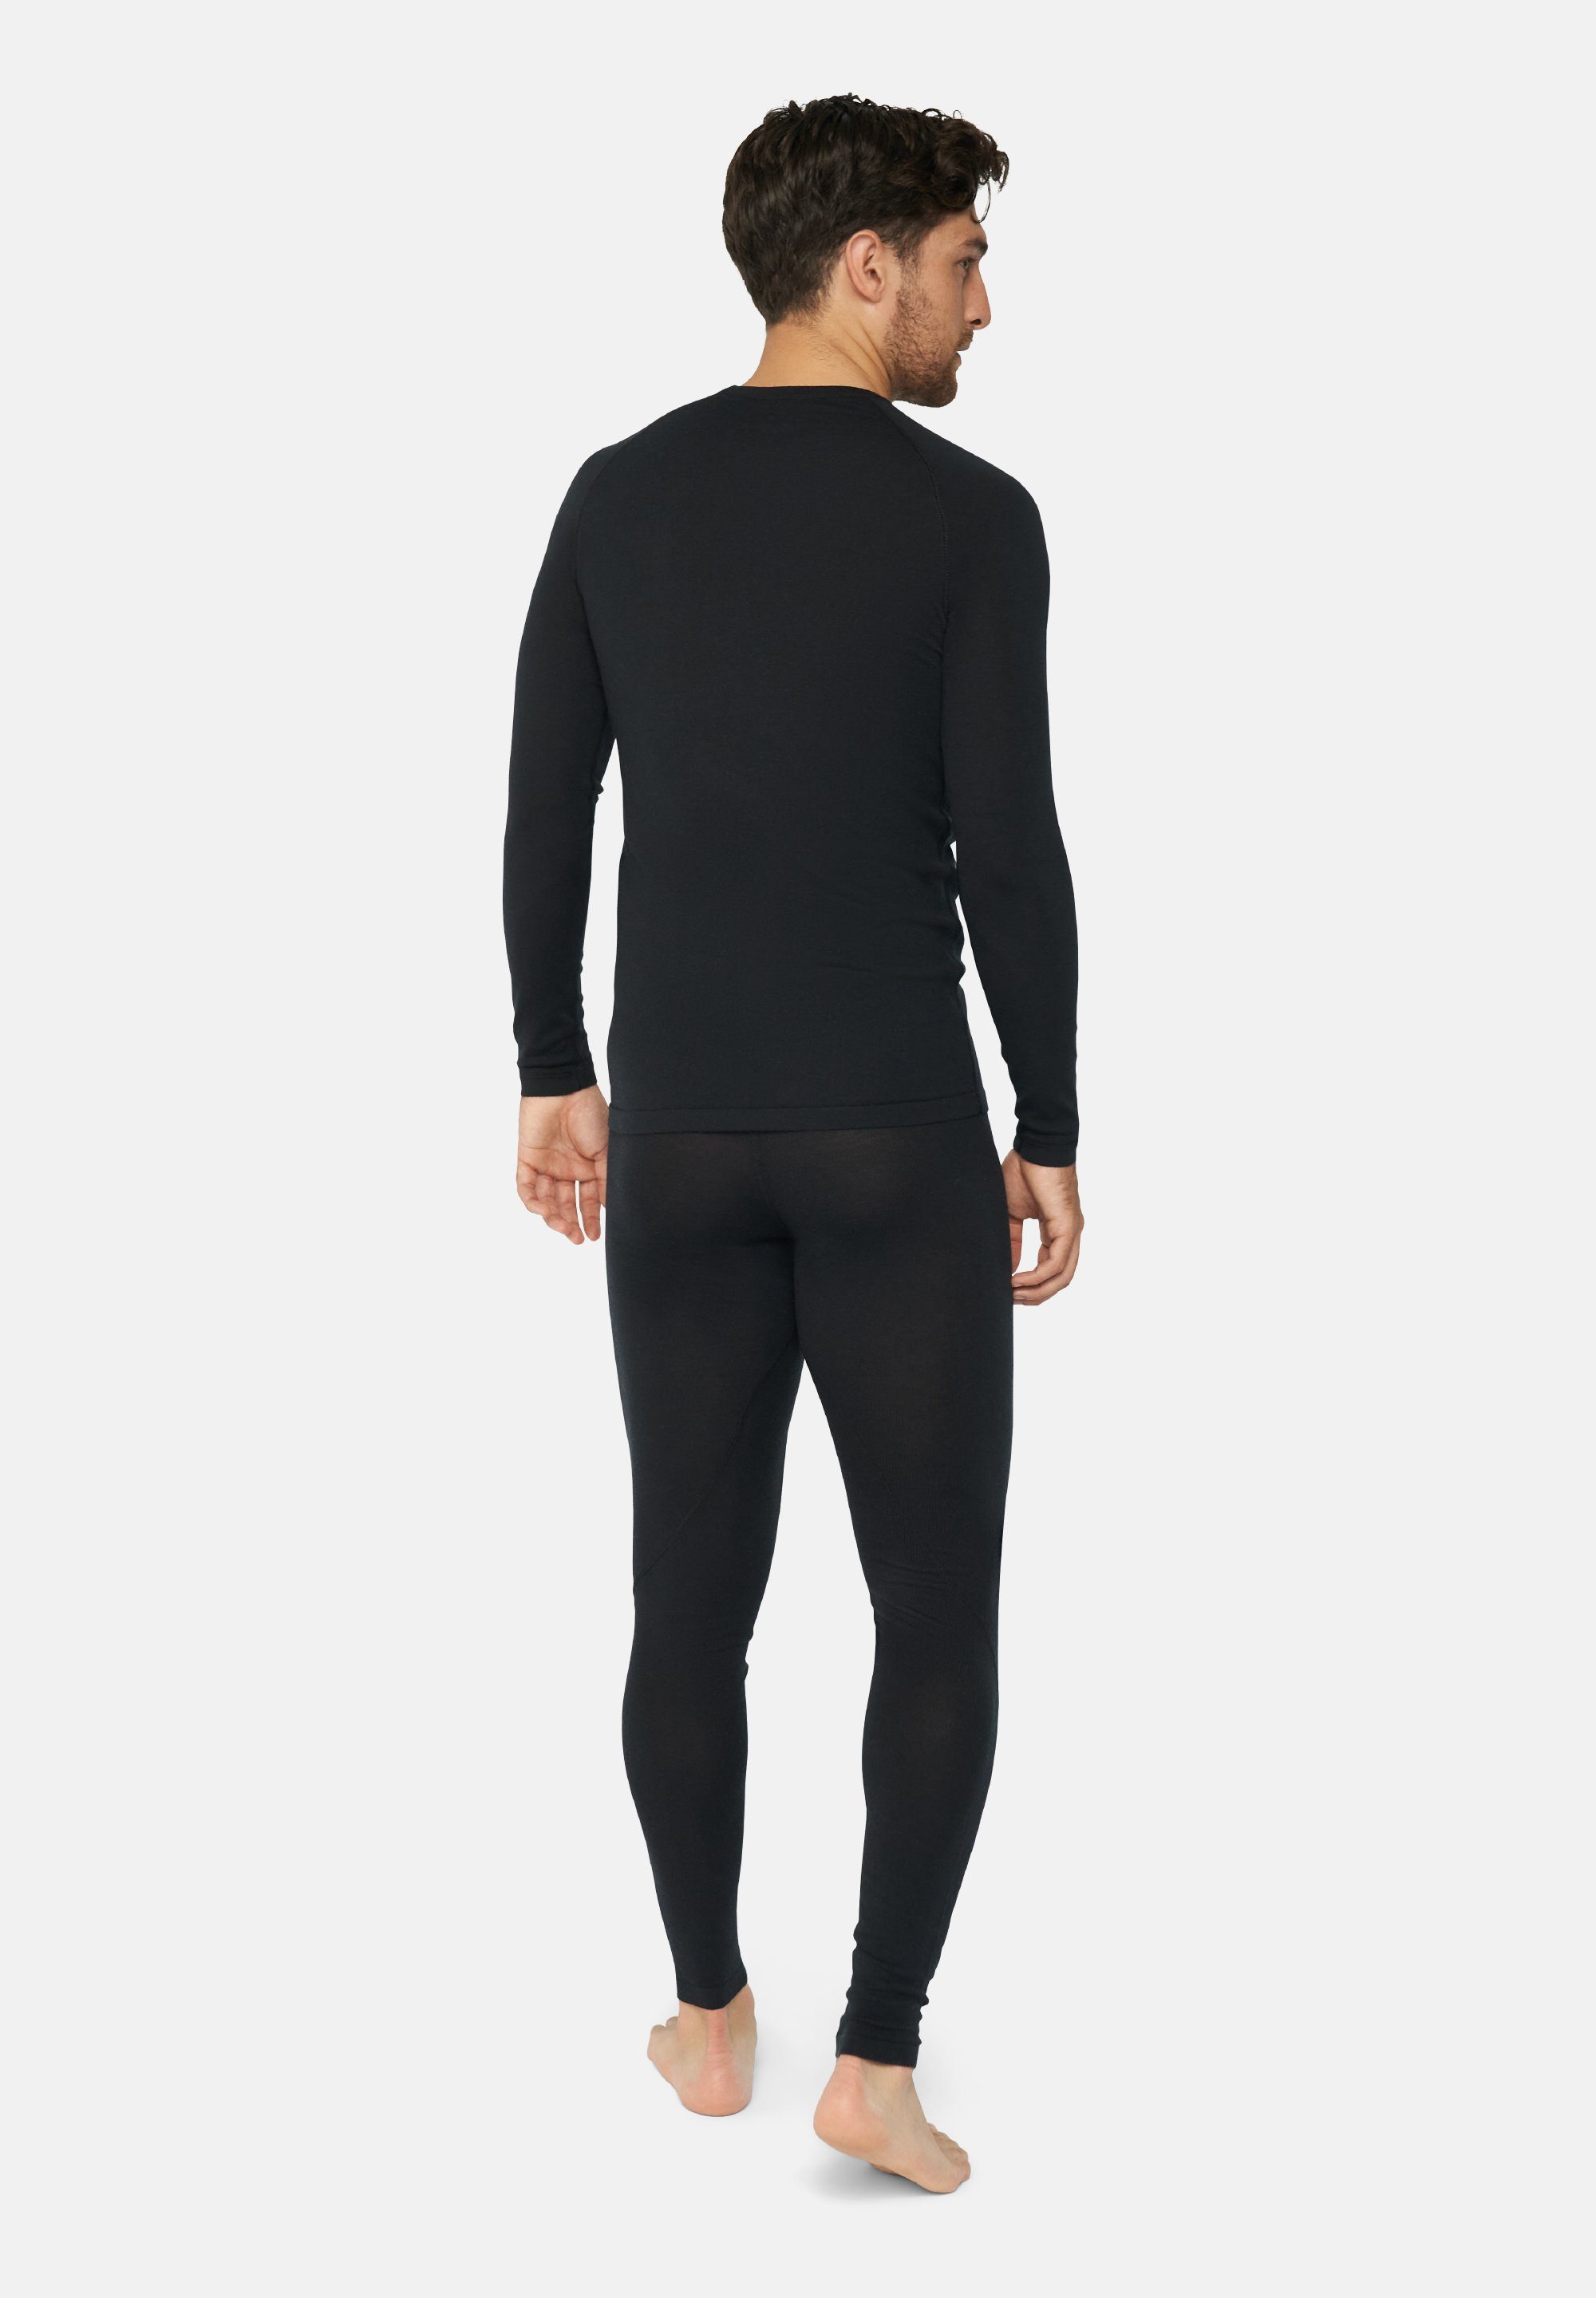 DANISH ENDURANCE Thermounterhemd Shirt für Merino schwarz Hose, Herren Langarm Set Thermo-Unterwäsche & Temperaturregulierend